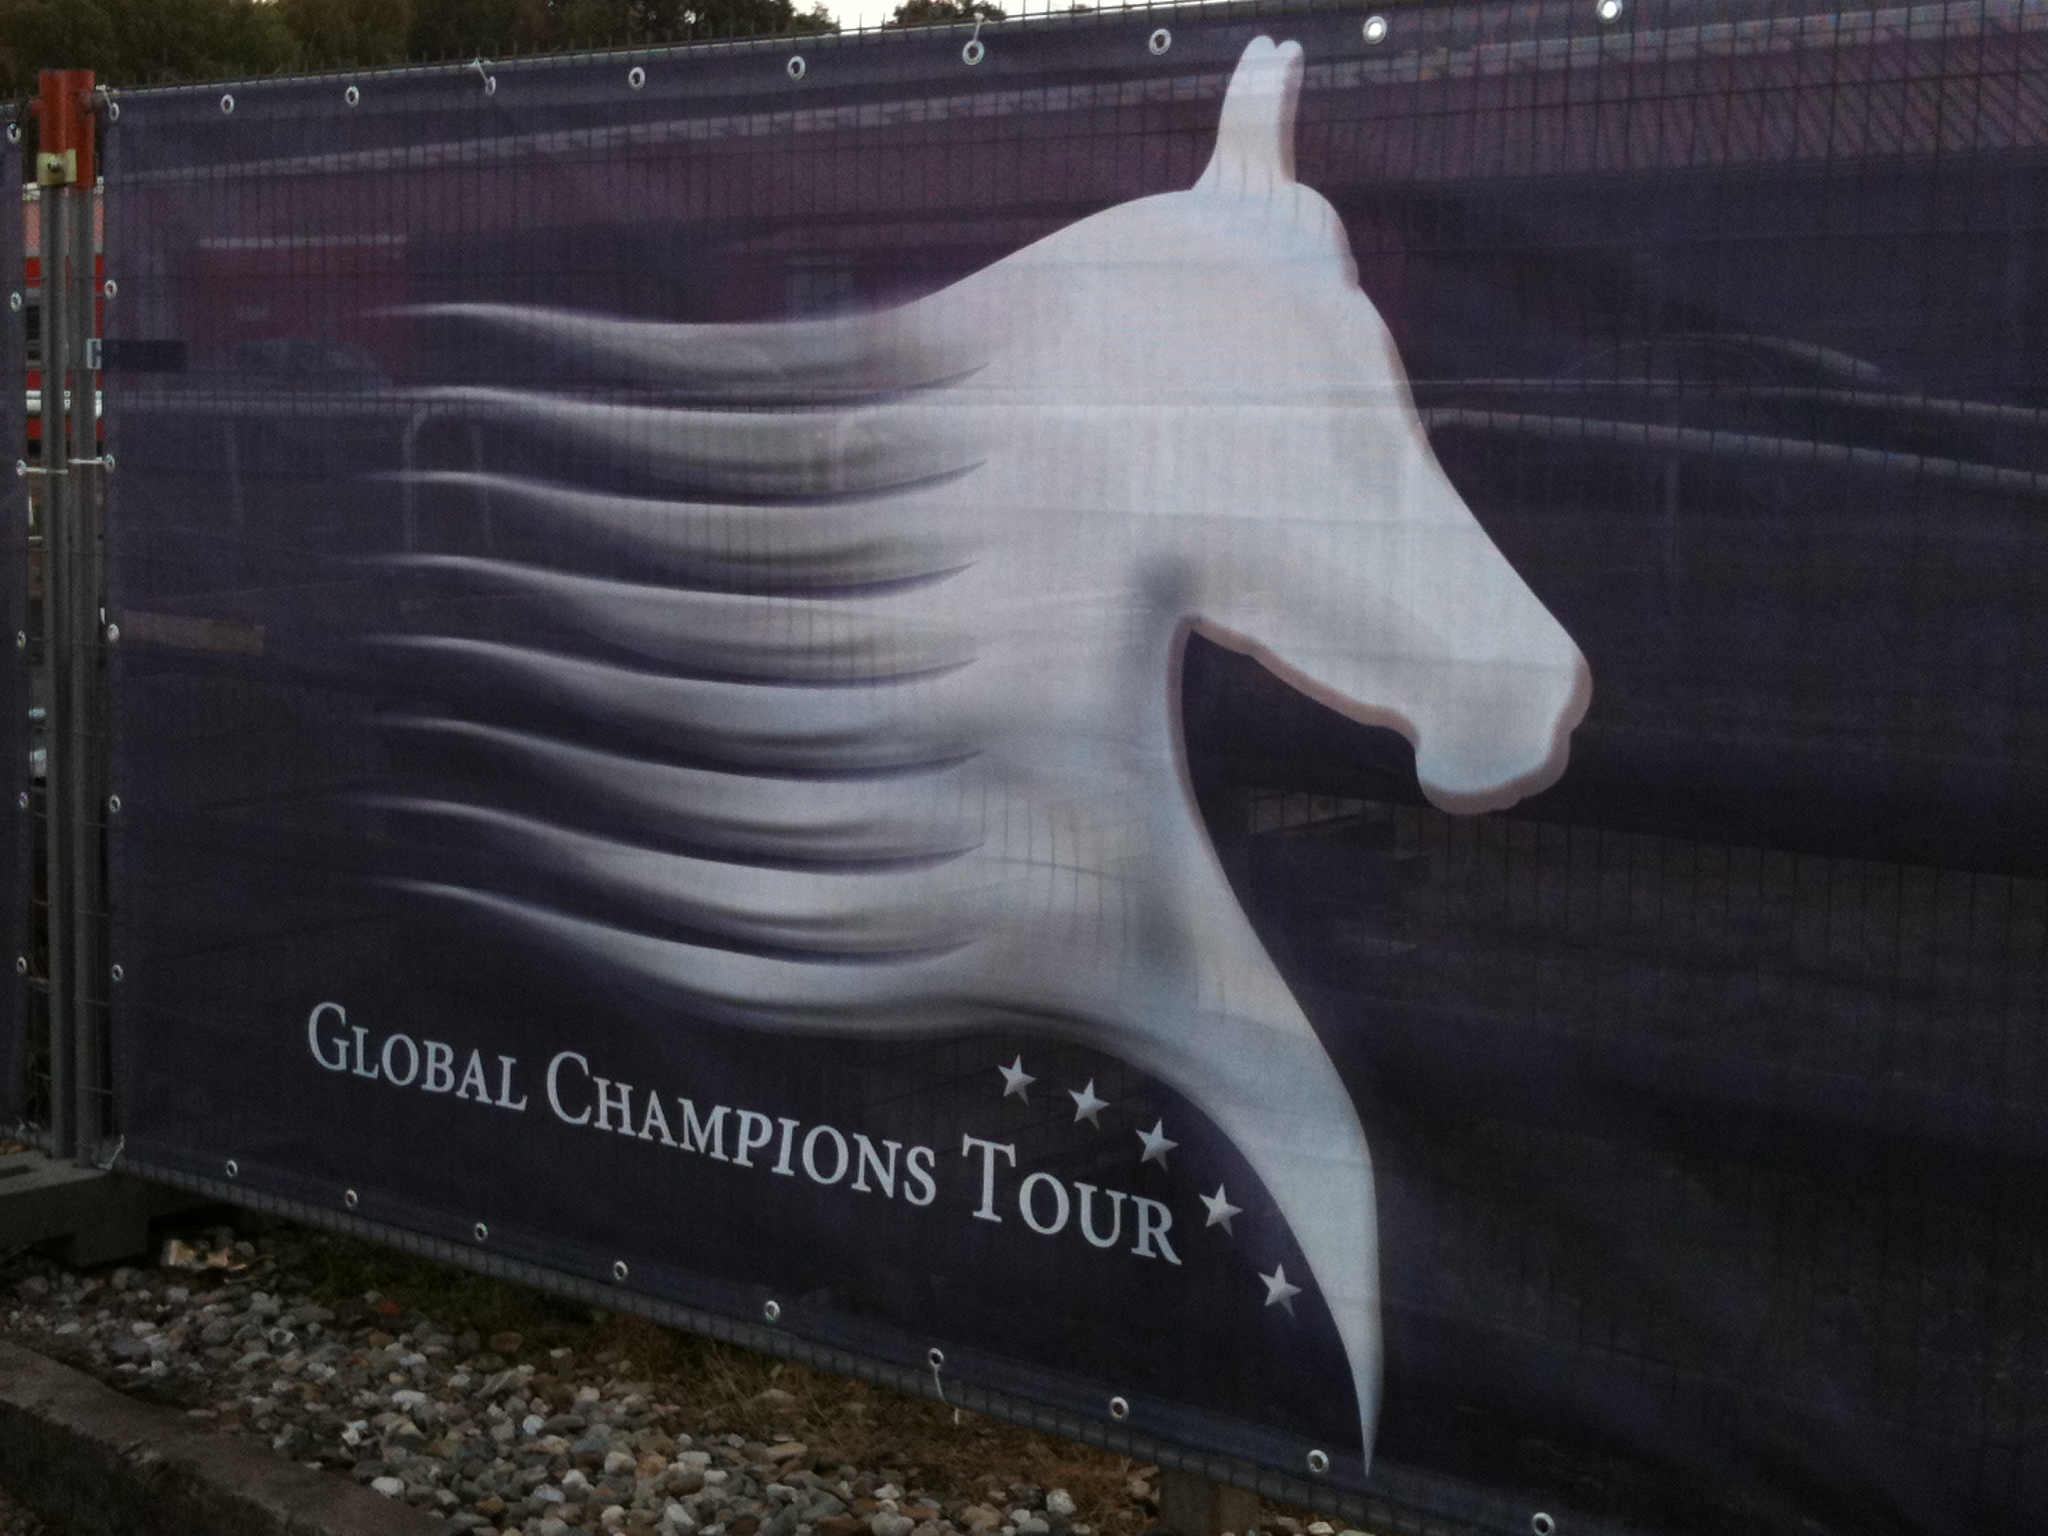 Global Champions Tour - Wikipedia